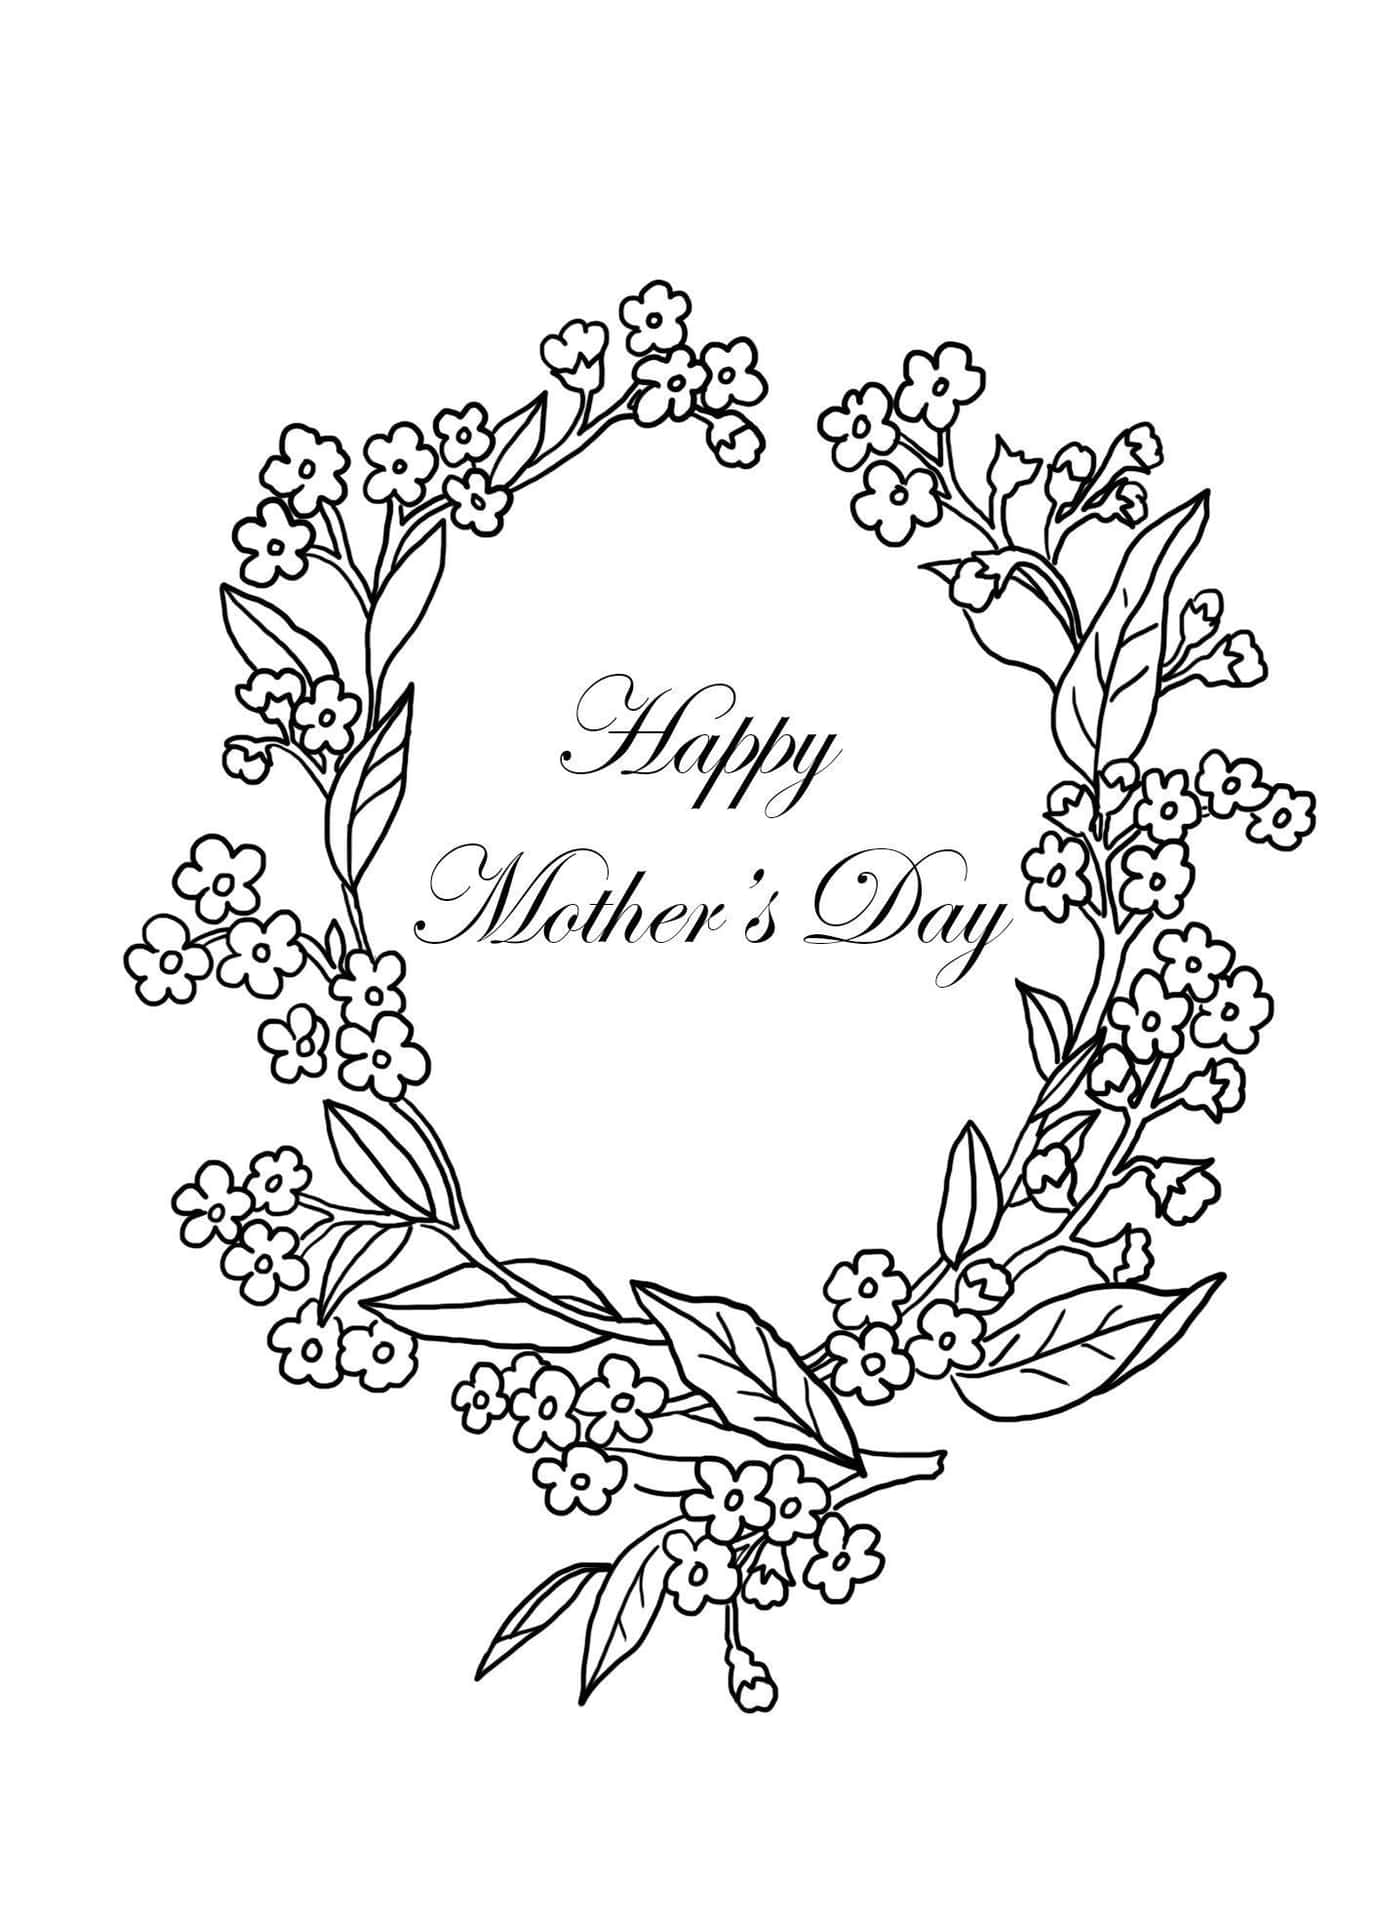 Giv tak til mødre overalt på Mors Dag.